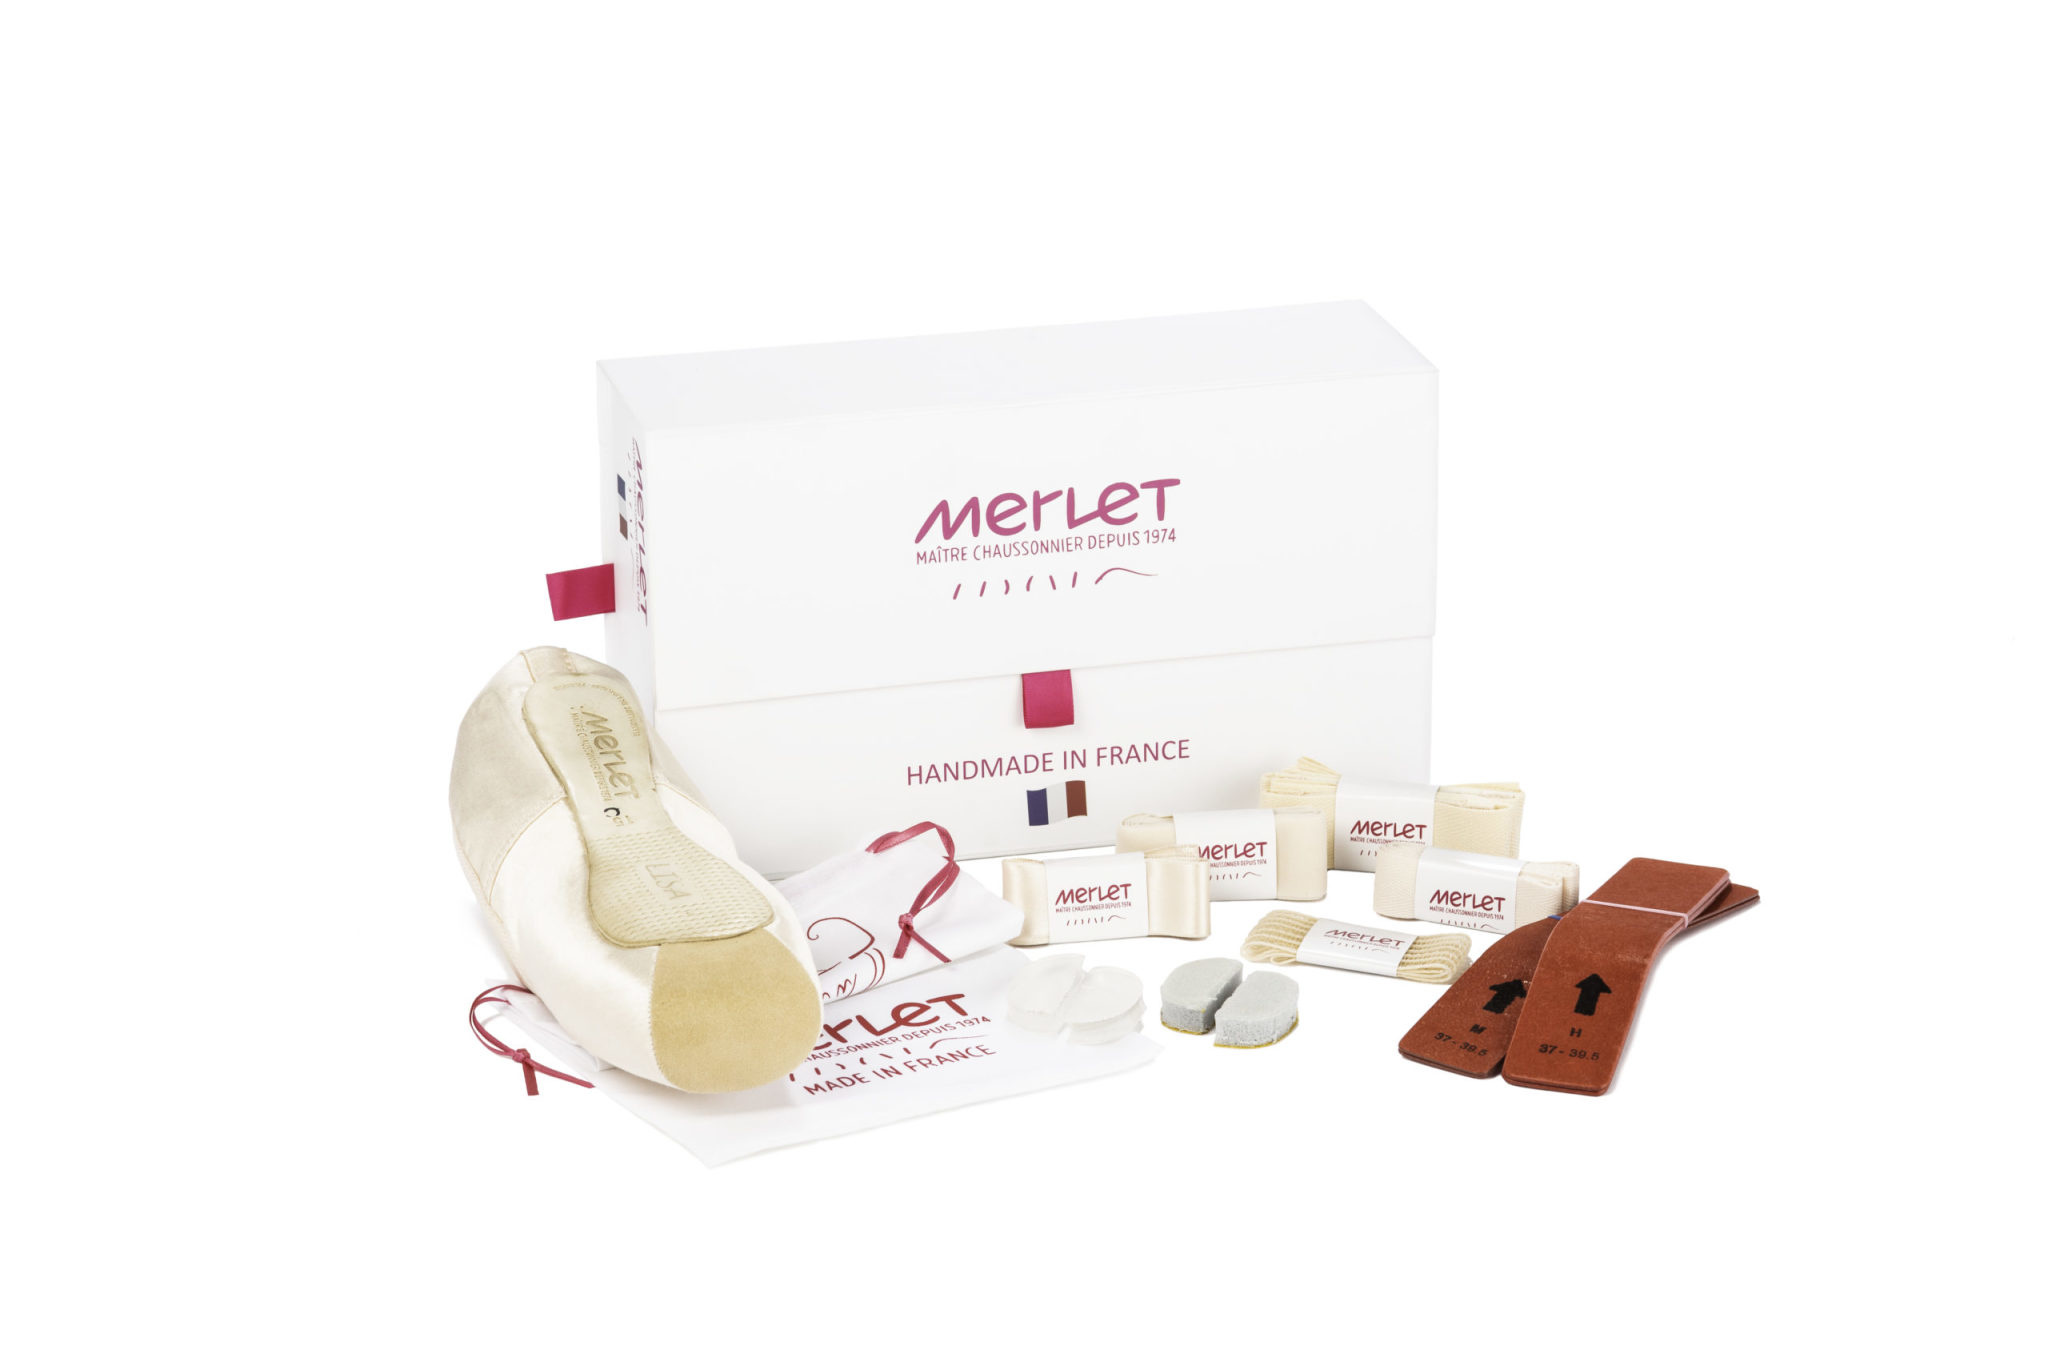 Merlet MERLET-Lisa Pointe Shoes